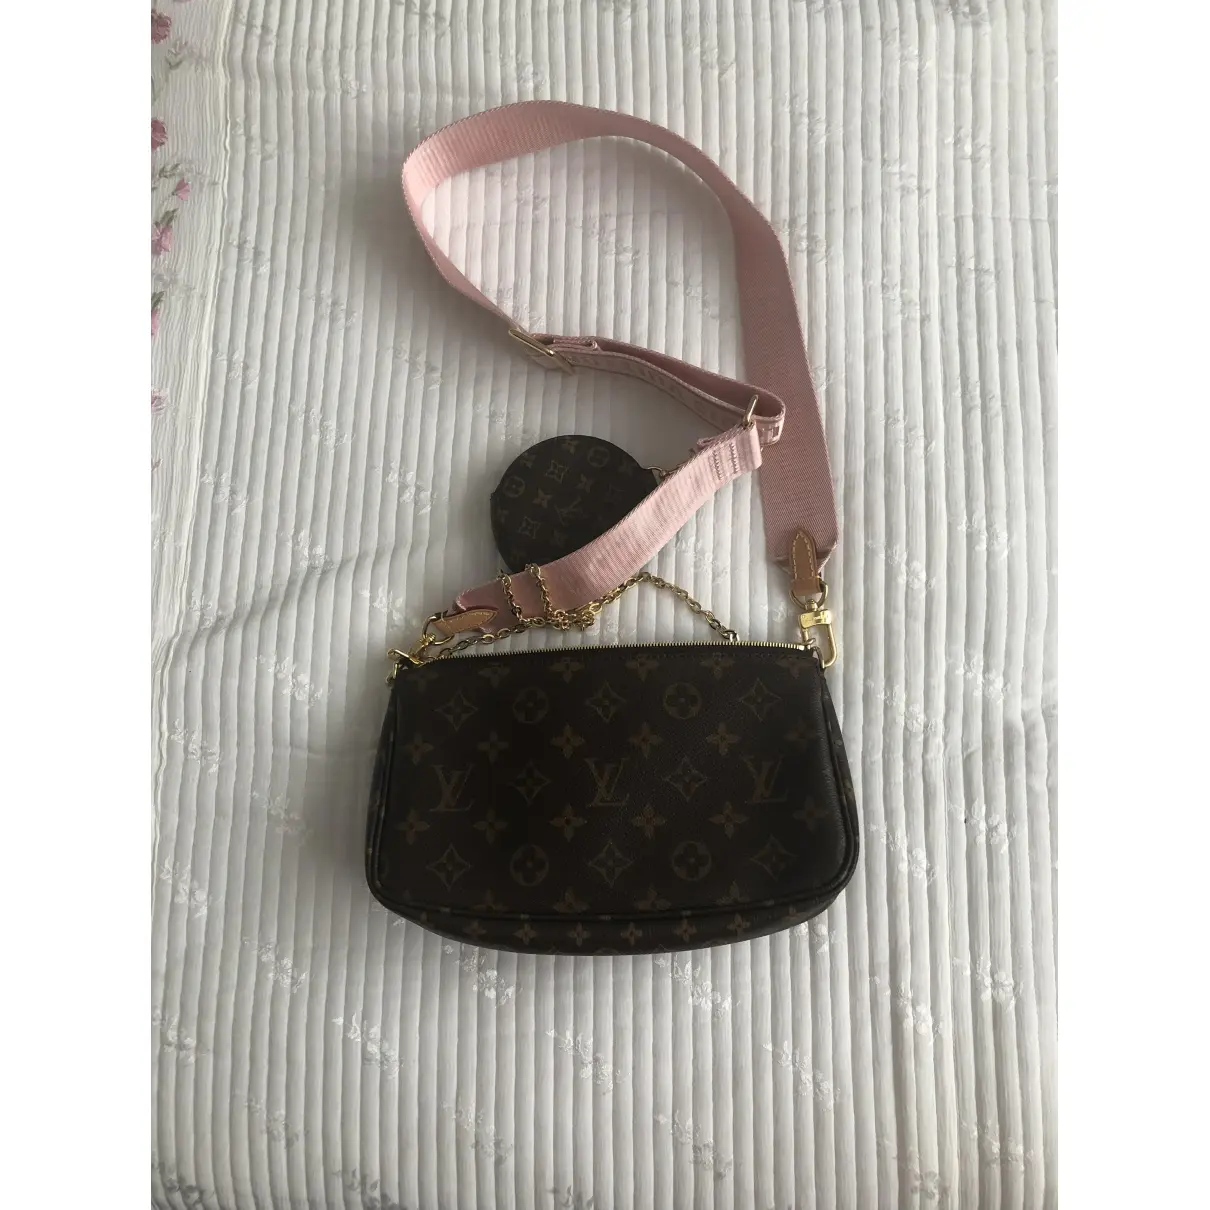 Buy Louis Vuitton Multi Pochette Accessoires leather crossbody bag online